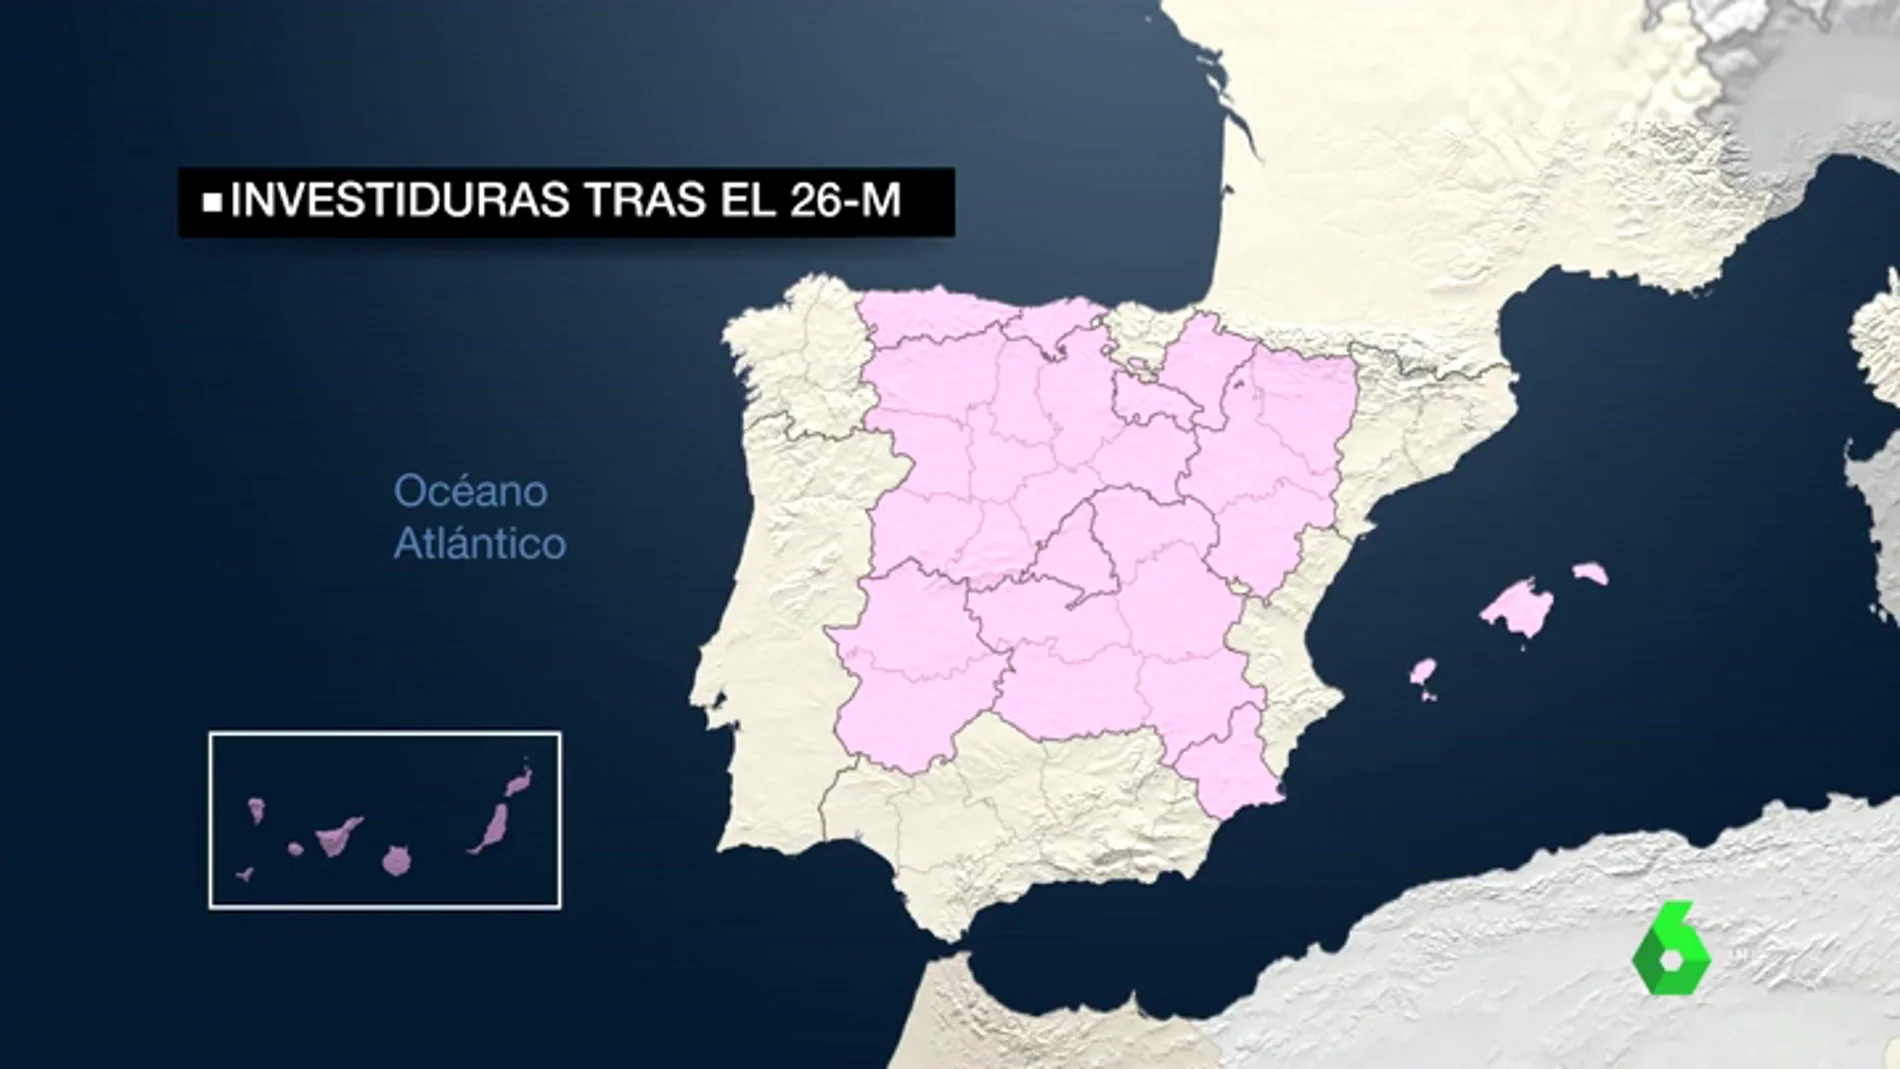 El mapa de España tras el 26M: Murcia, Madrid, La Rioja, Aragón y Navarra penden de un hilo para el éxito de la investidura